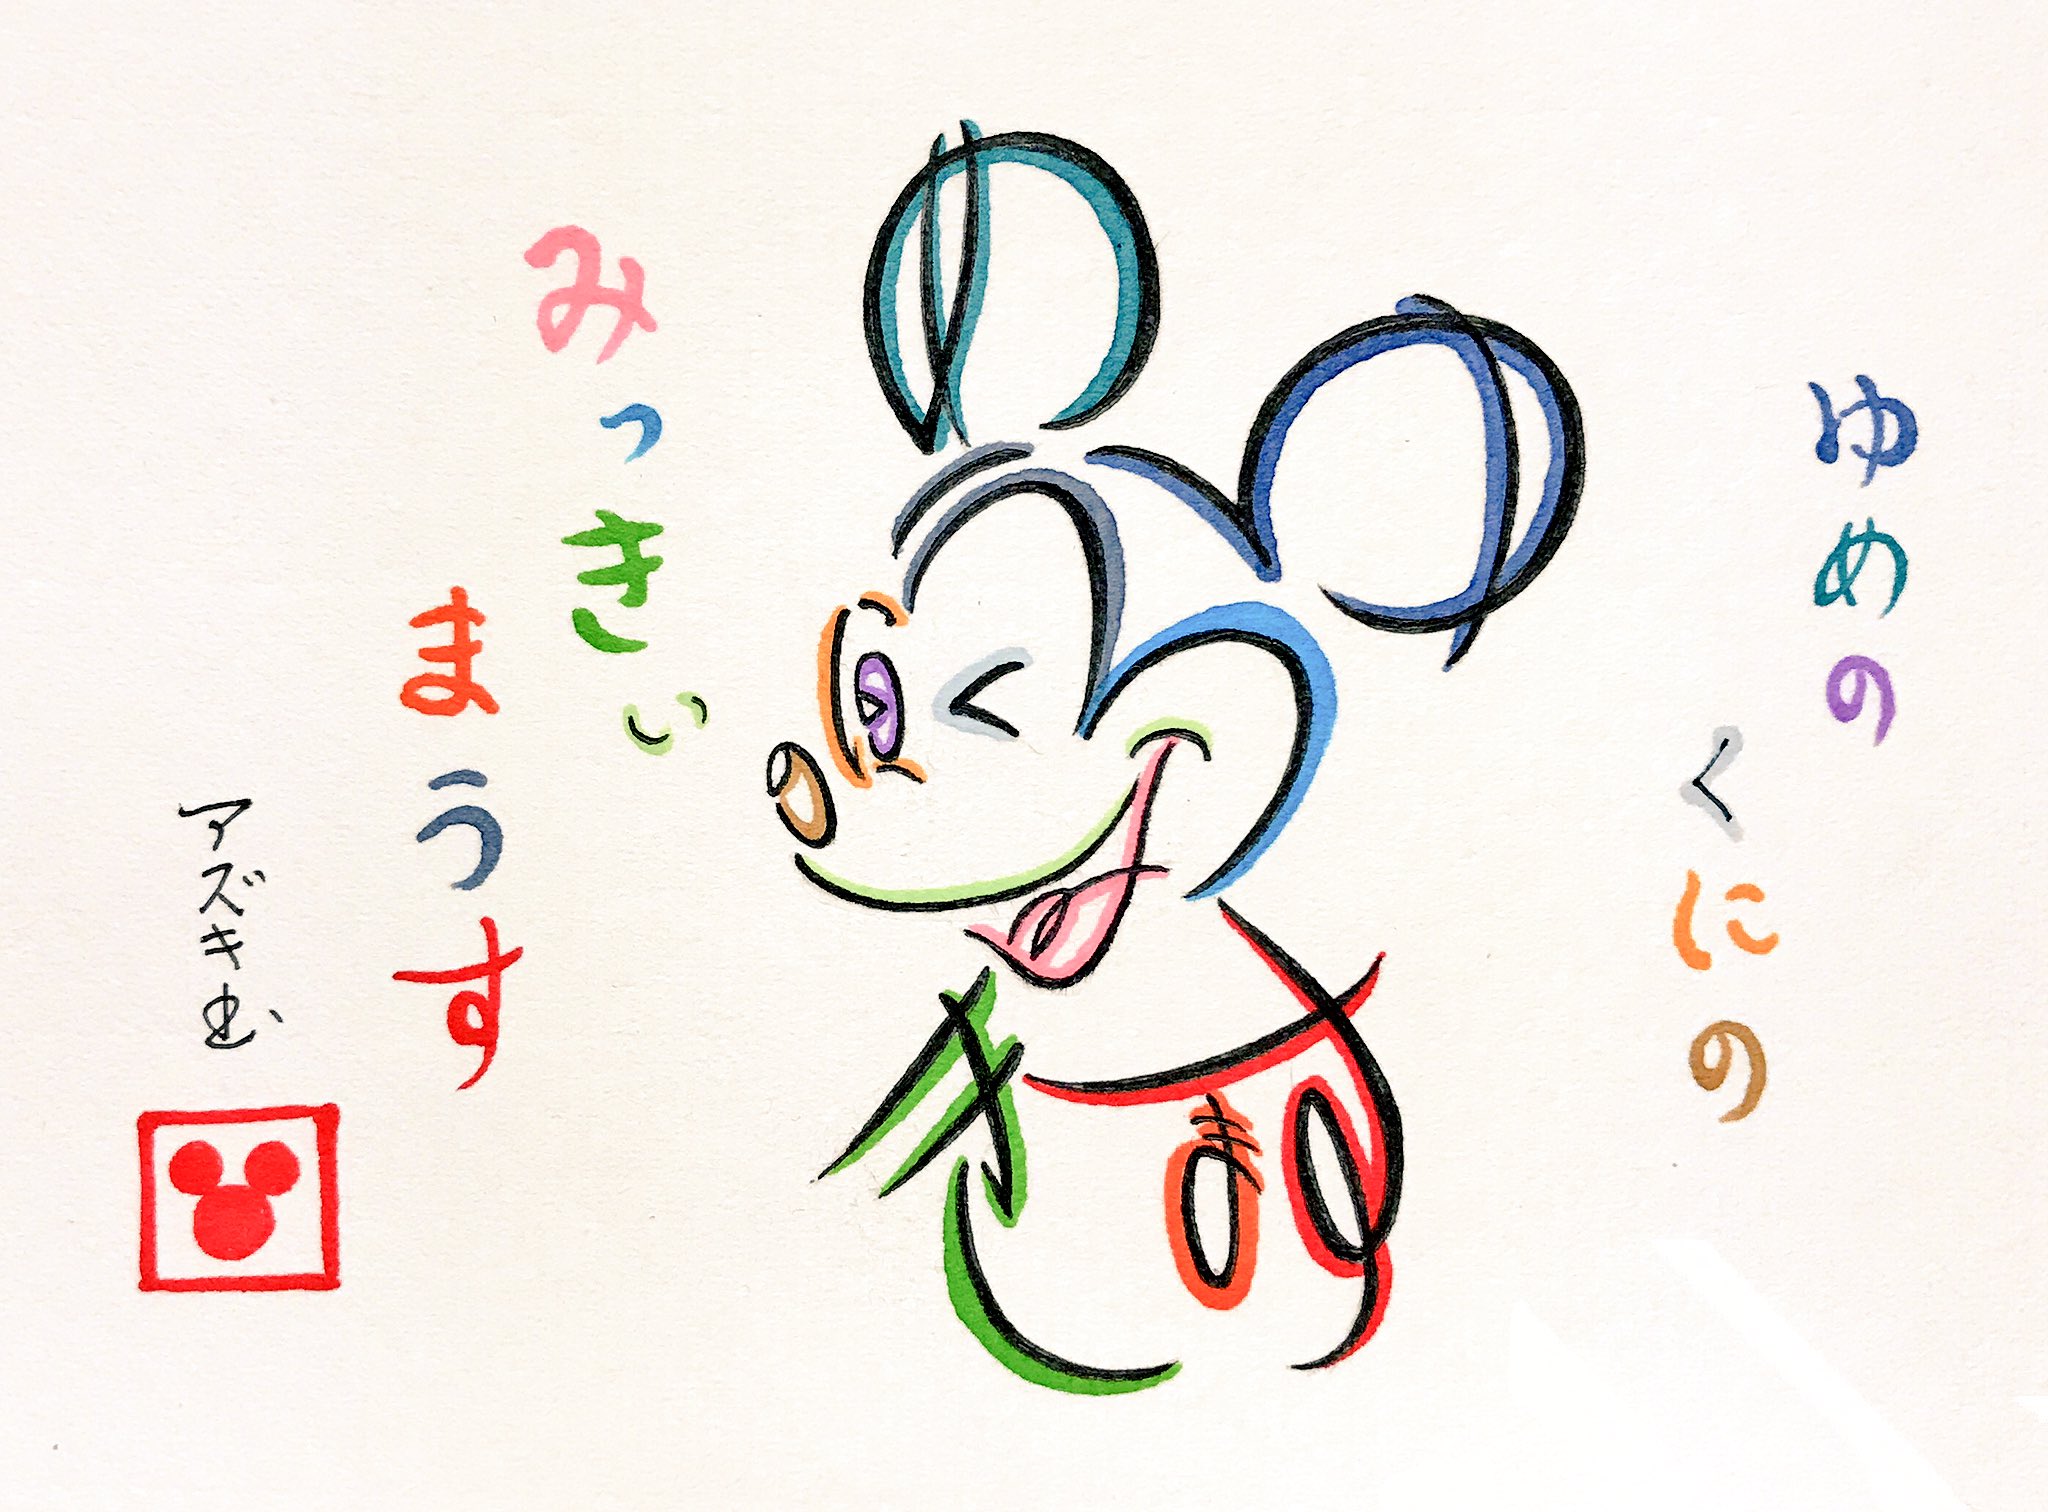 文字絵師アズキ No Twitter ひらがなでミッキーマウスを描いてみた ゆめのくにの 夢の国の みっきいまうす ミッキーマウス ディズニー T Co 2iygkrvoni Twitter